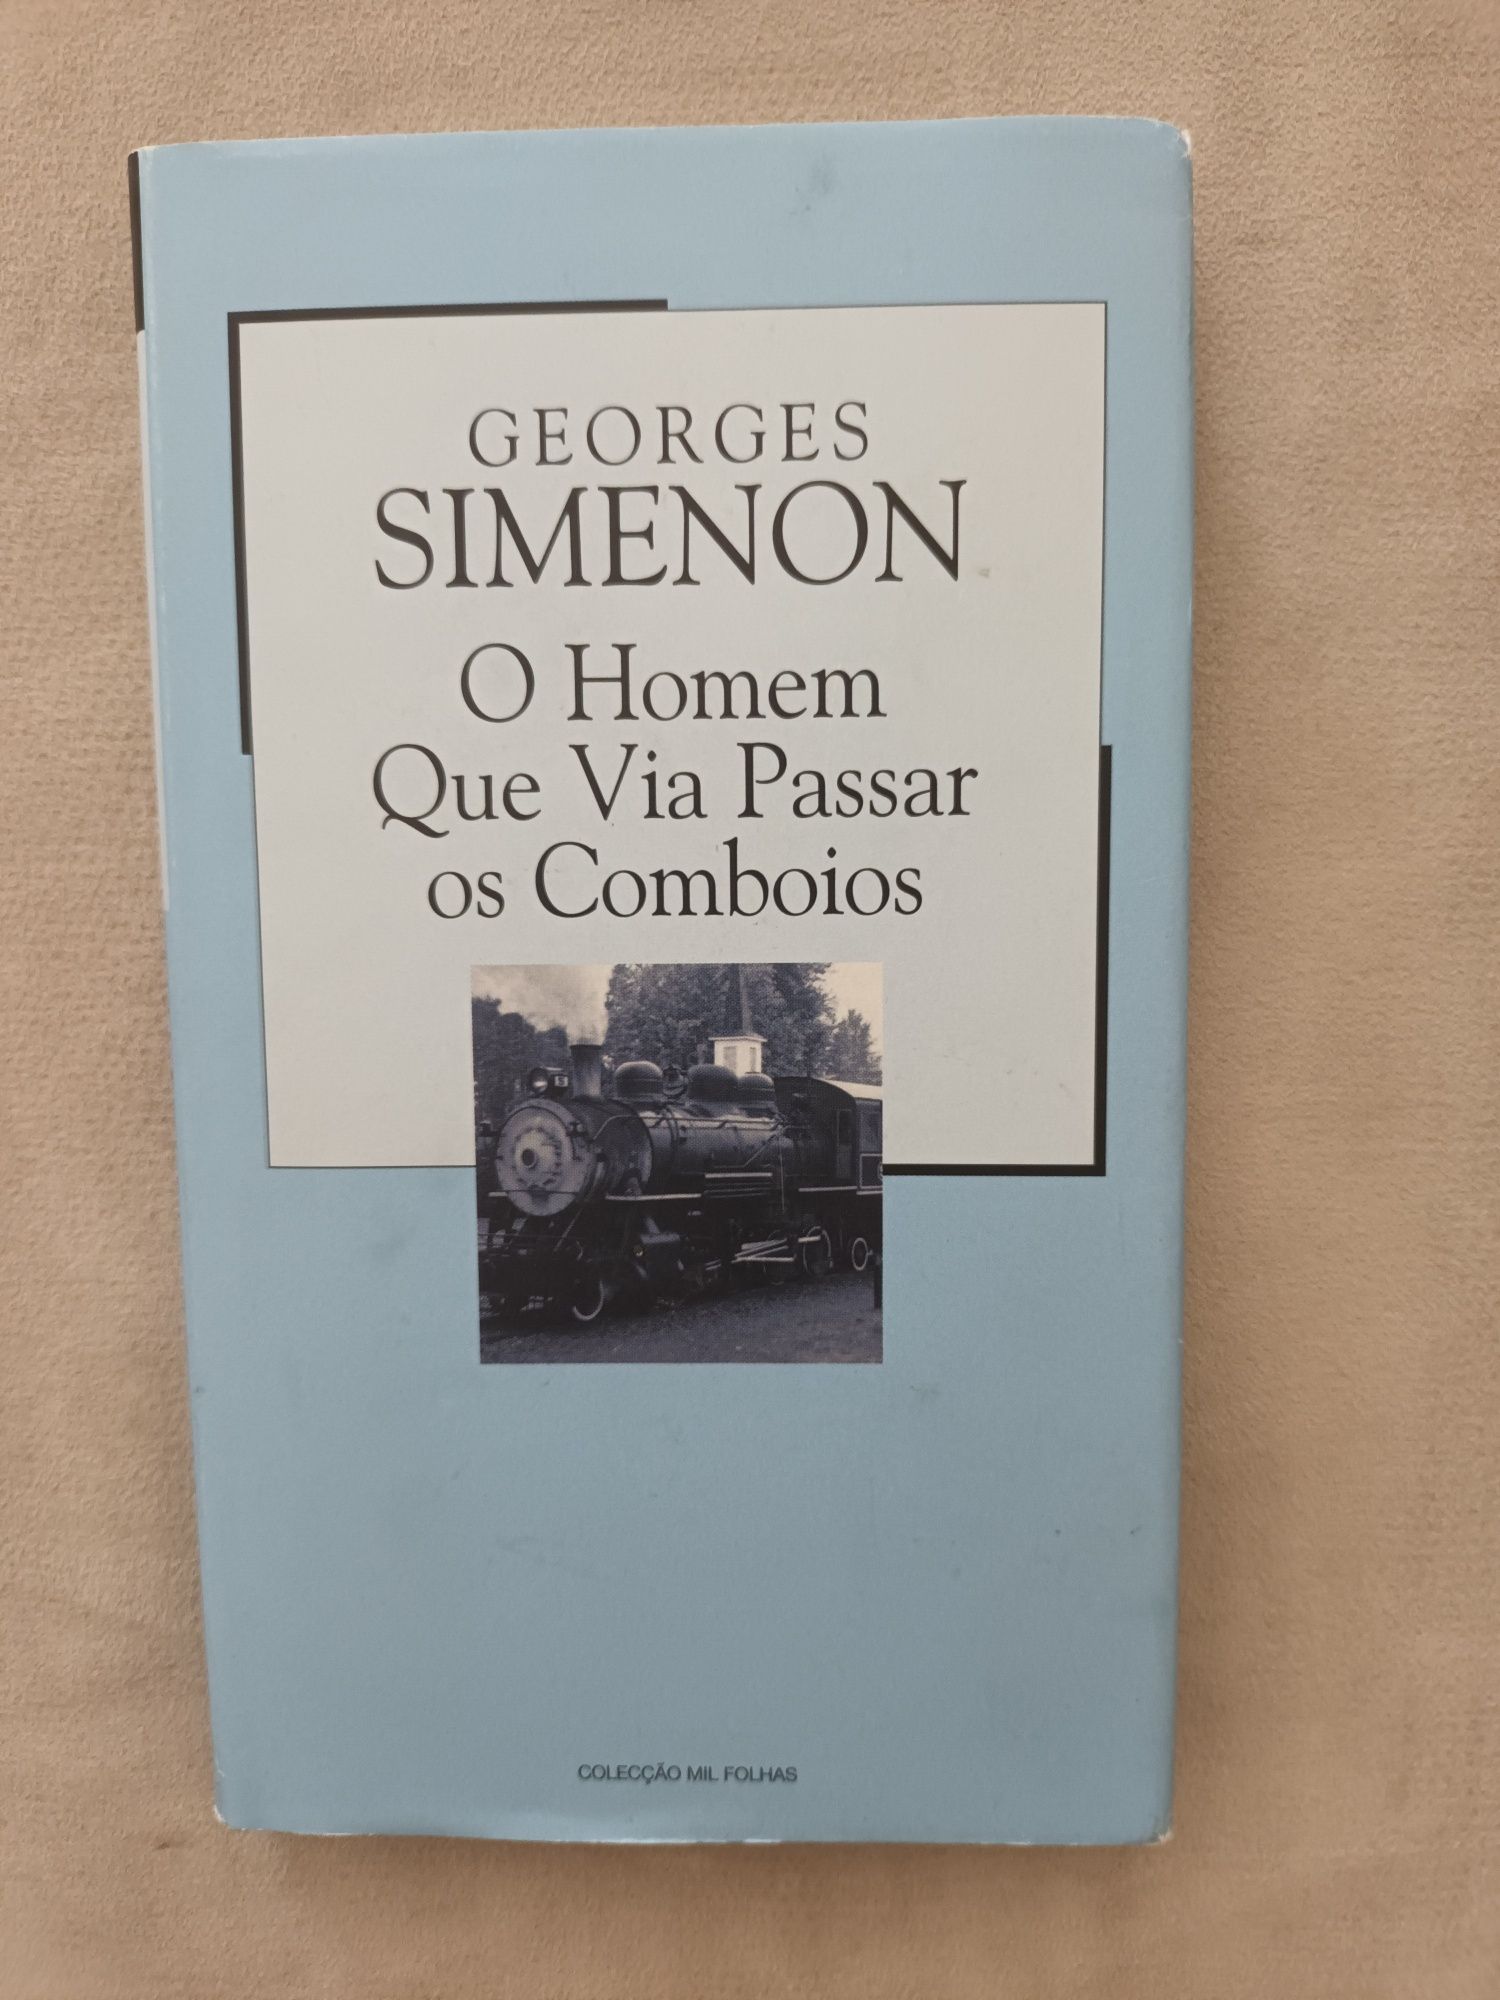 O Homem que via Passar os Comboios, de Georges Simenon